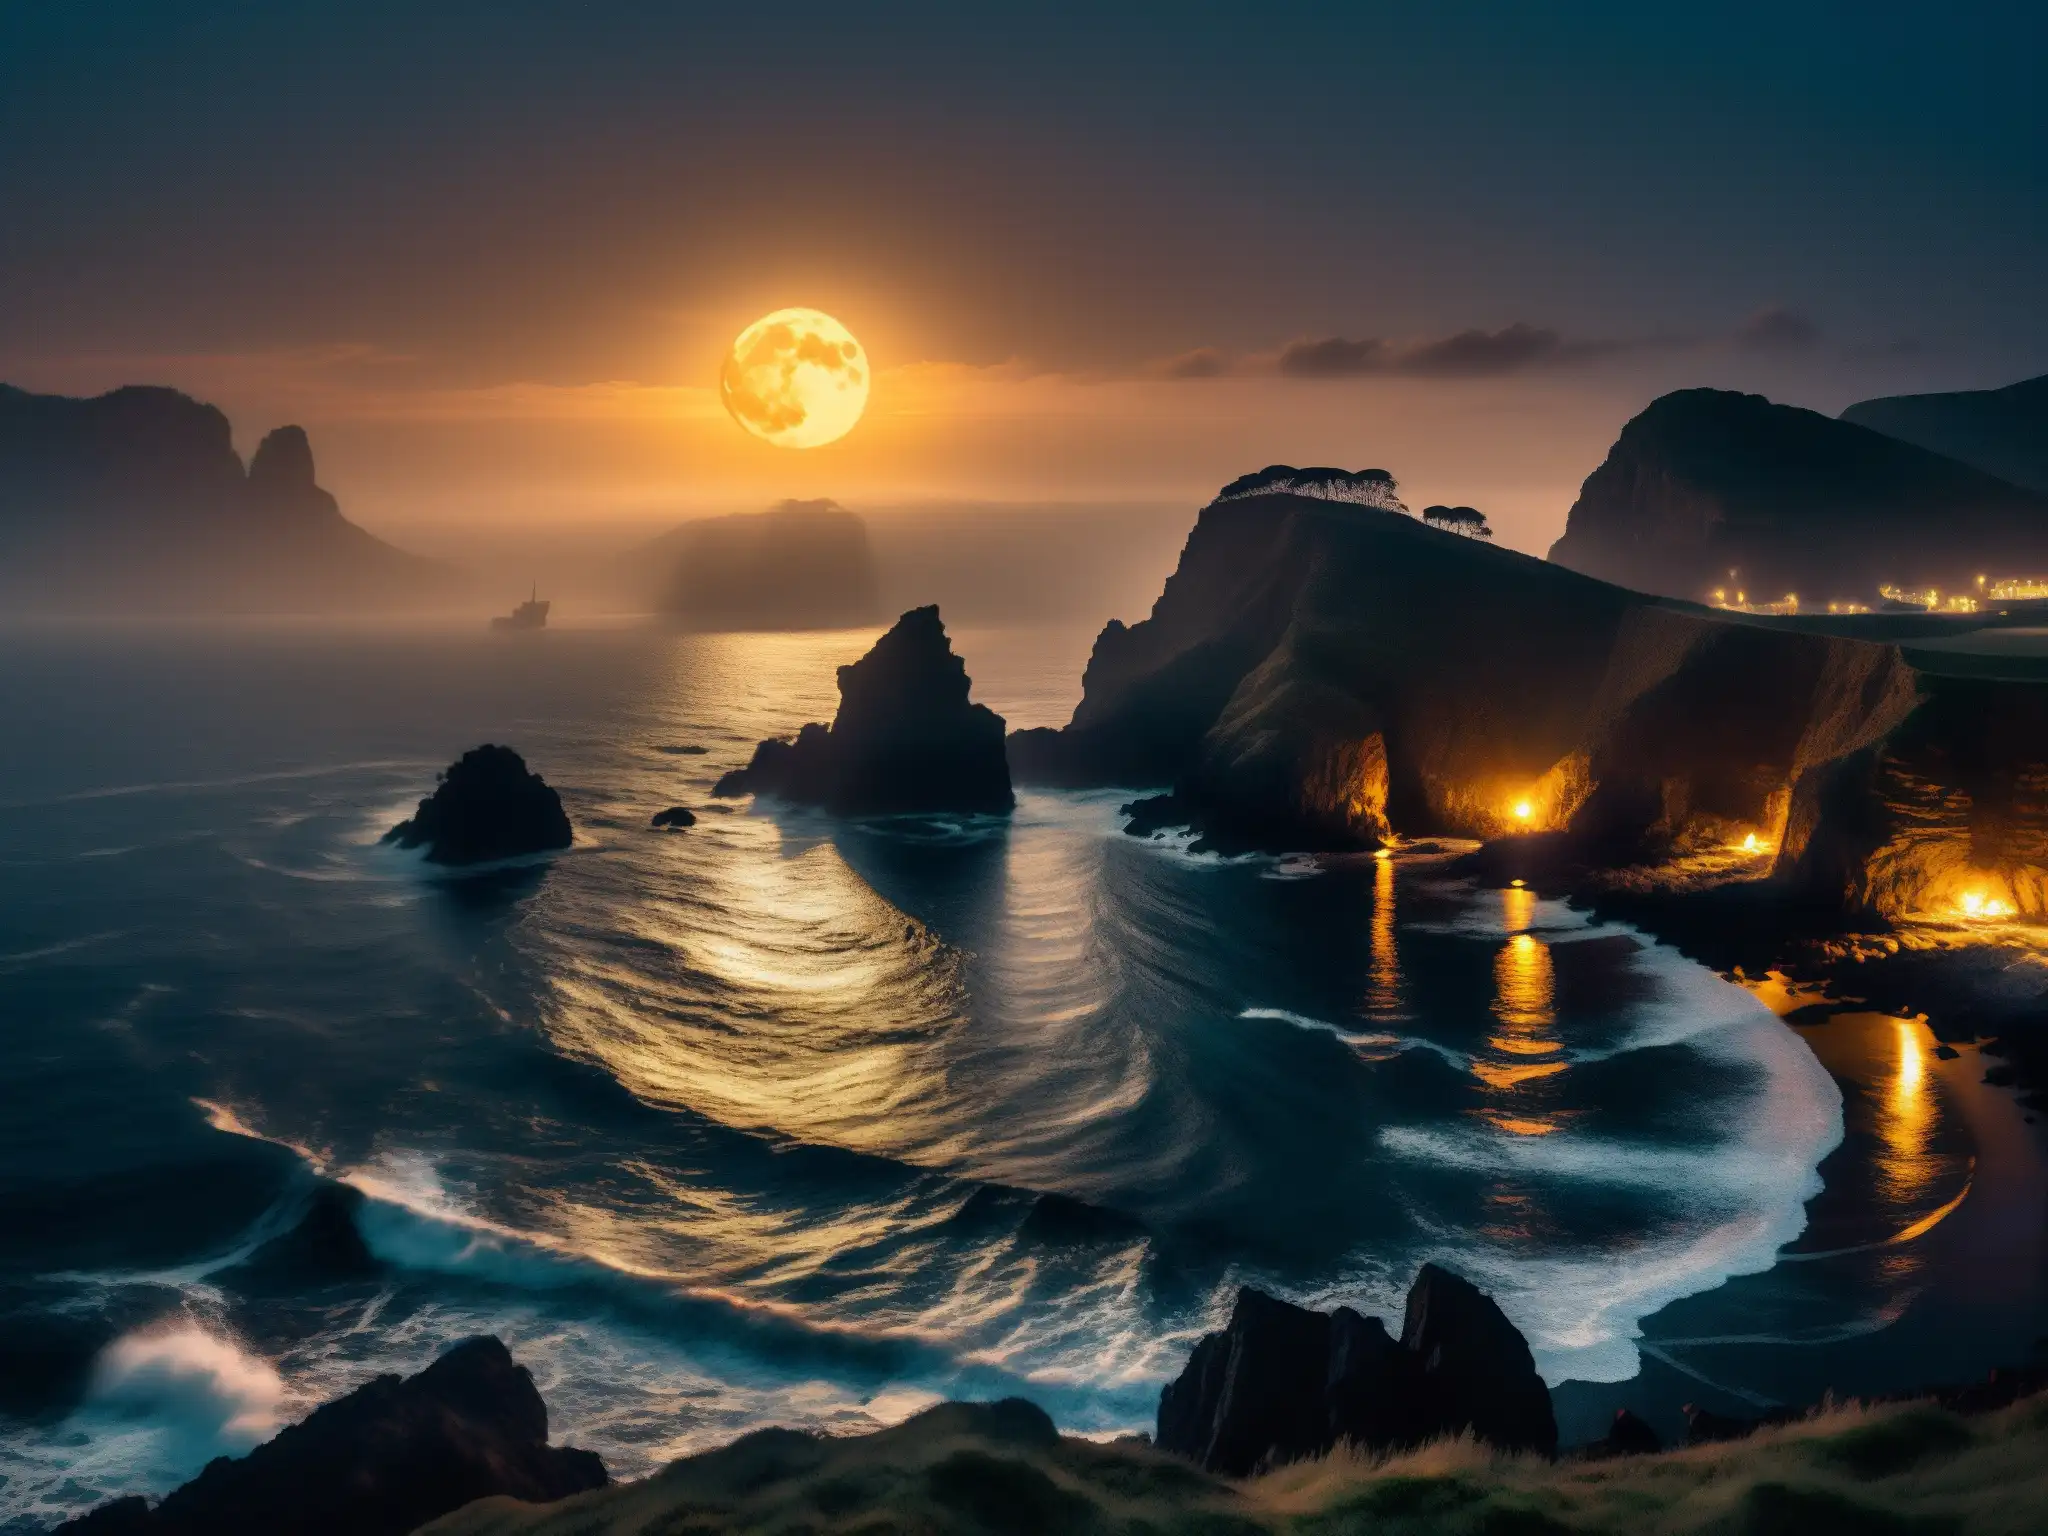 Un paisaje costero iluminado por la luna, con antiguos barcos desvaneciéndose en la neblina